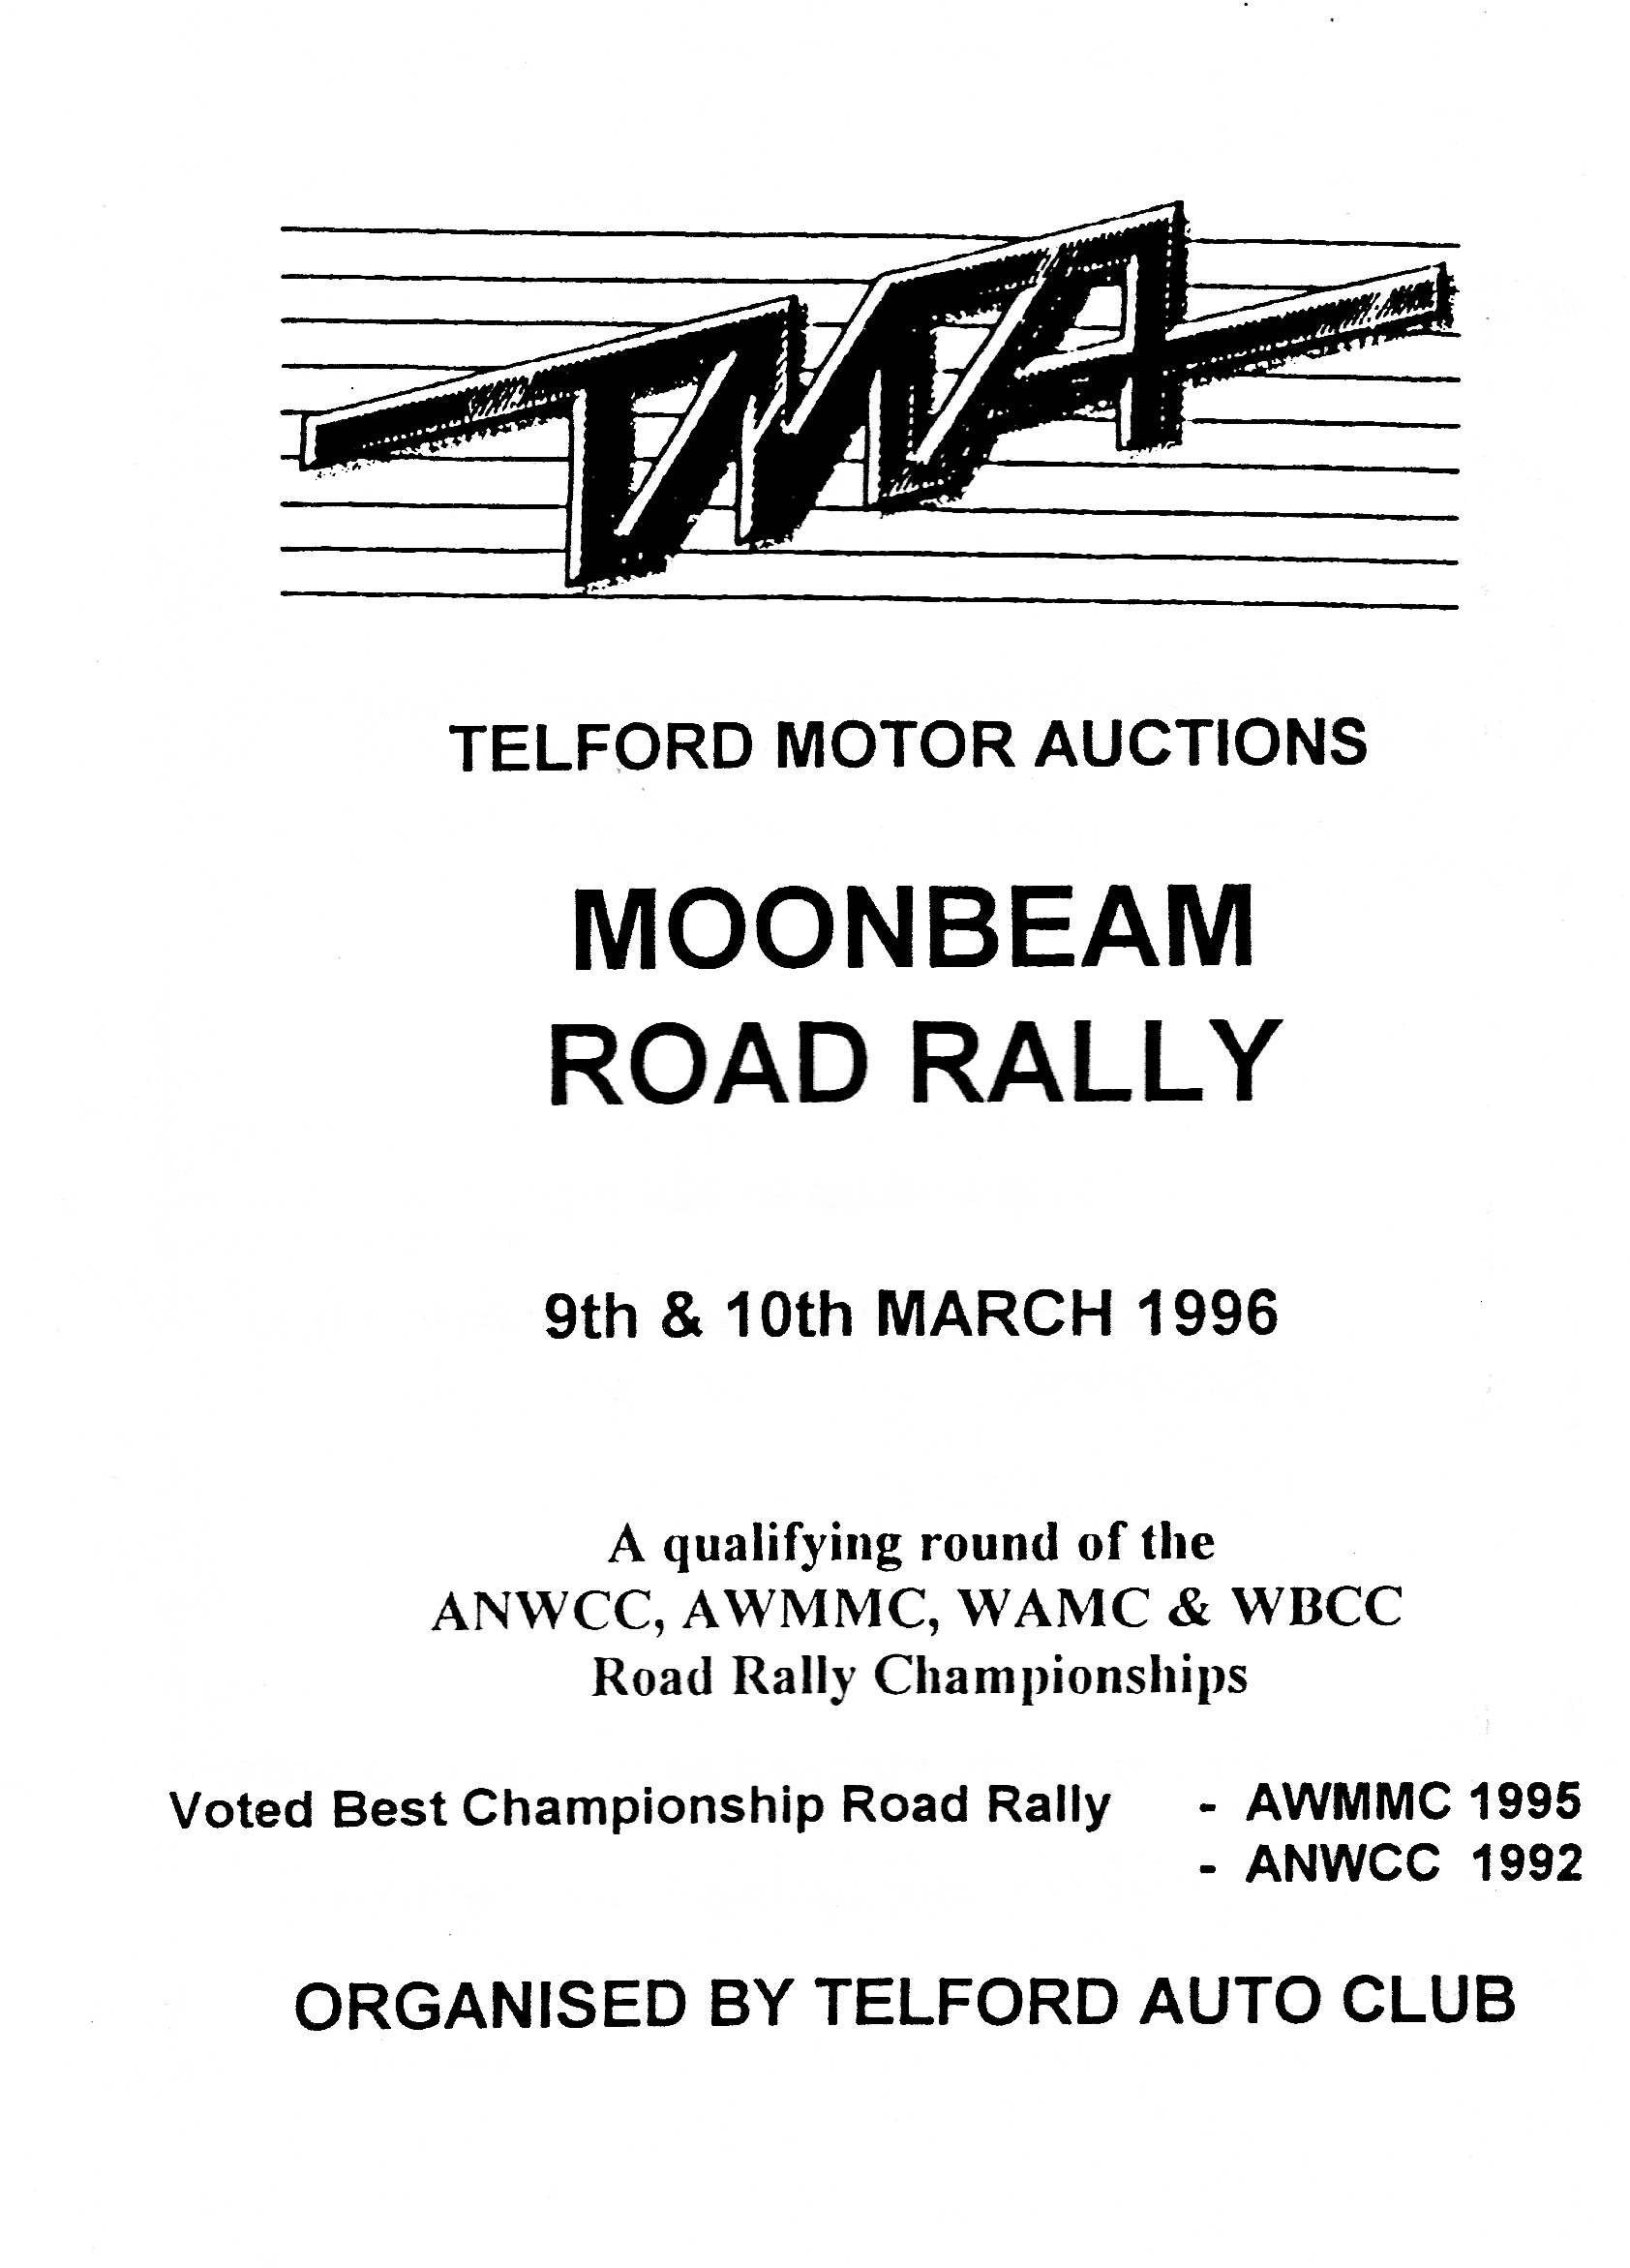 Moonbeam Rally 1996